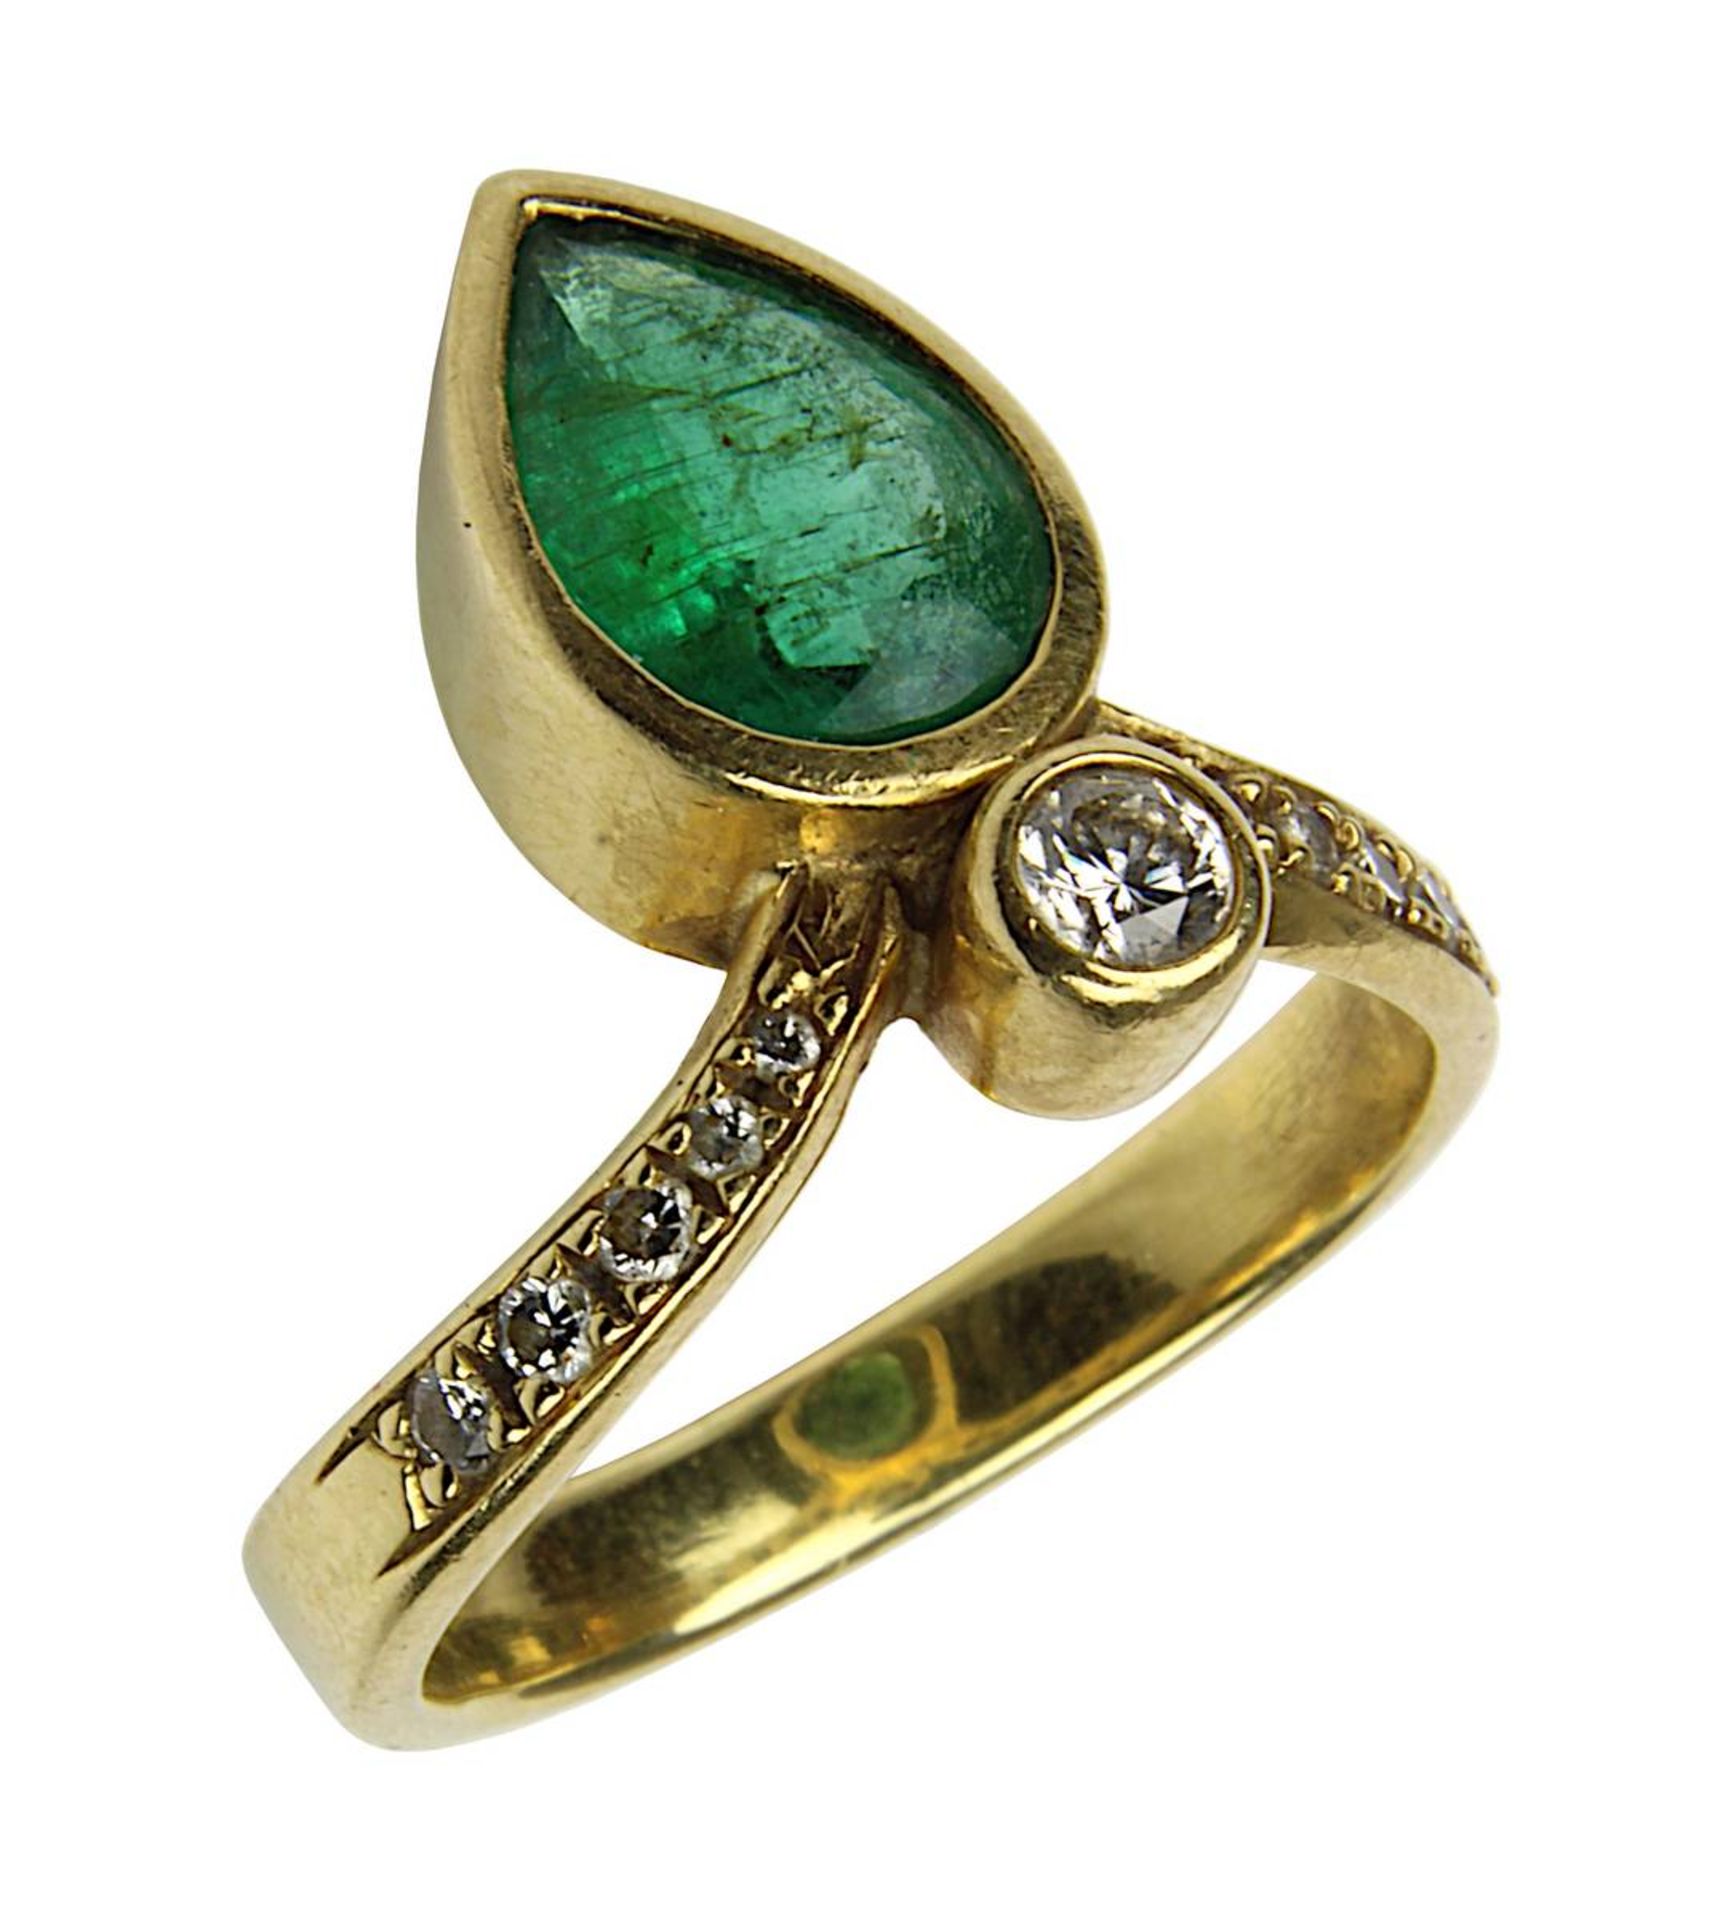 Gelbgold-Ring mit Smaragd und Brillanten, deutsch um 1990, handgefertigte Ringschiene gepunzt 750,